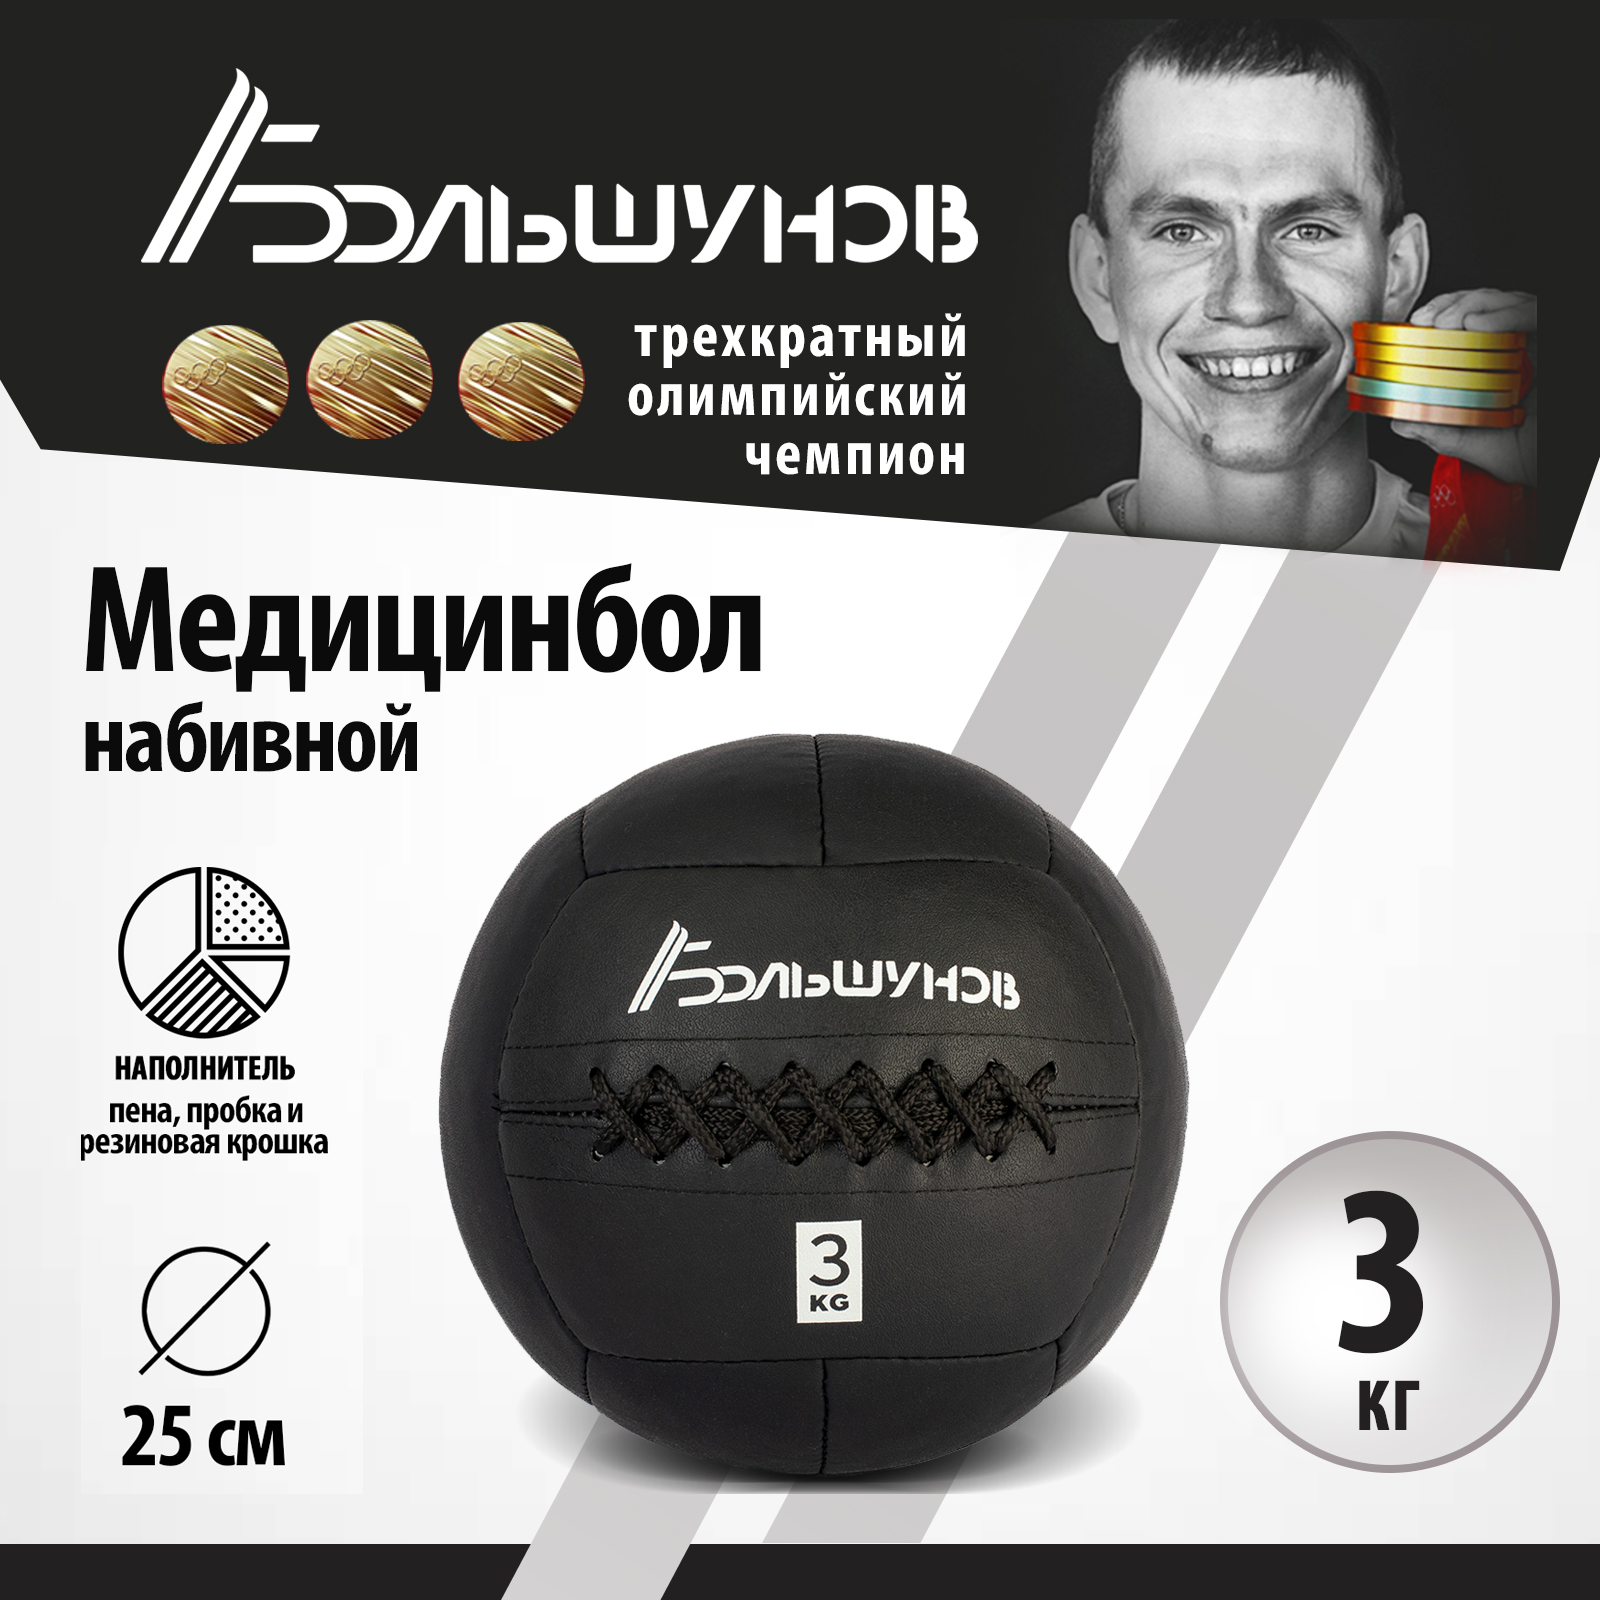 Медбол Александр Большунов, 25см, 3 кг